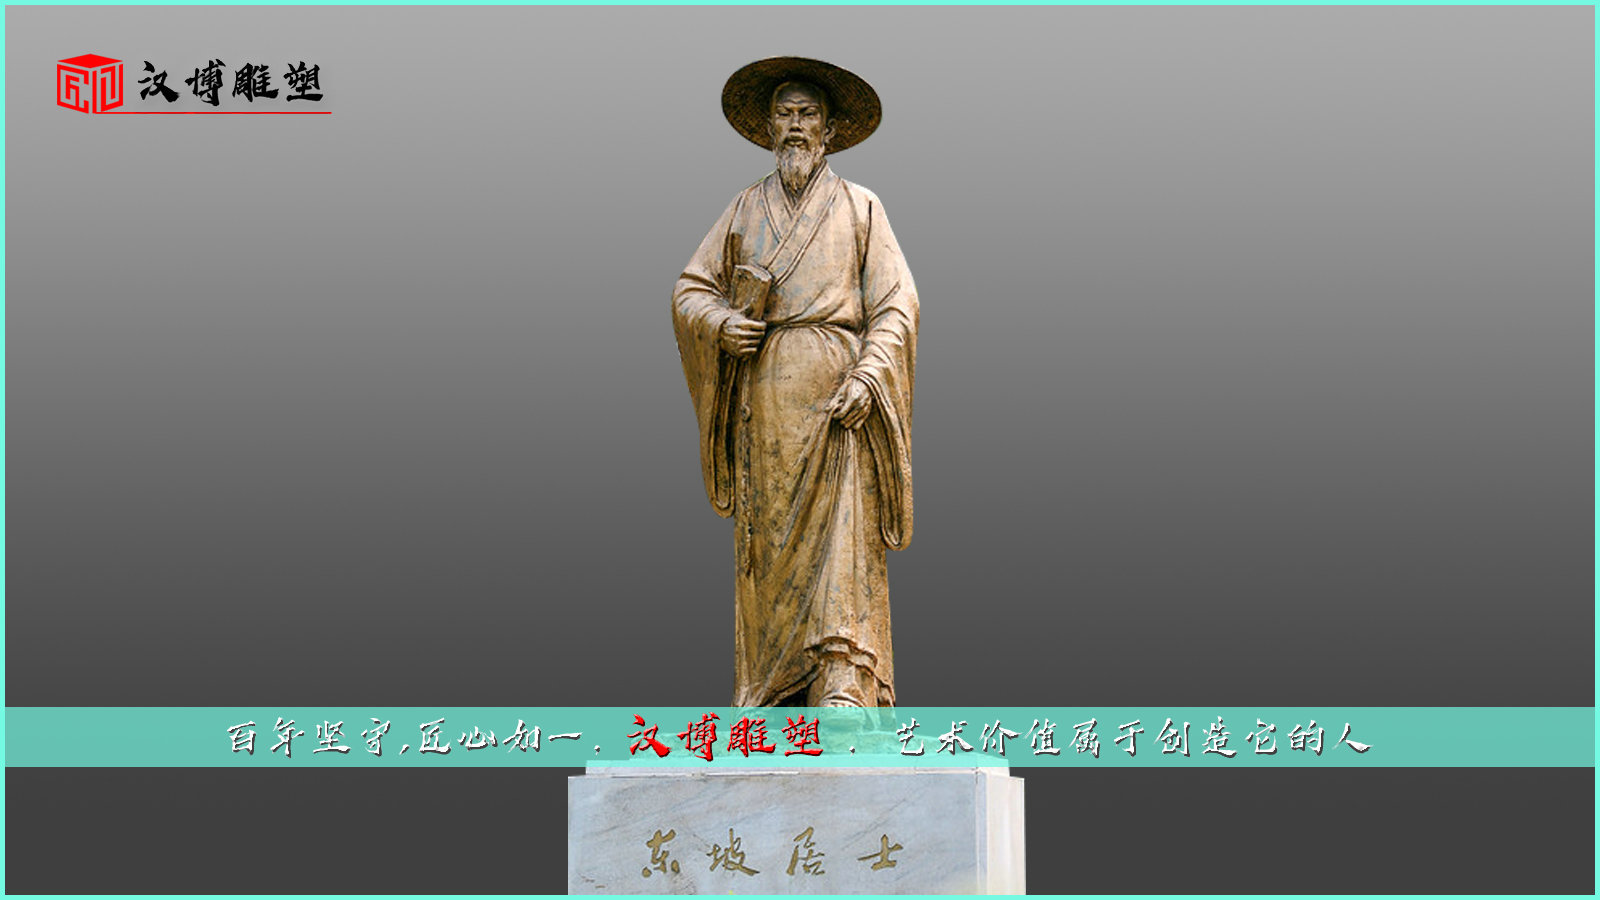 历史人物雕像,名人铜雕,校园景观雕塑